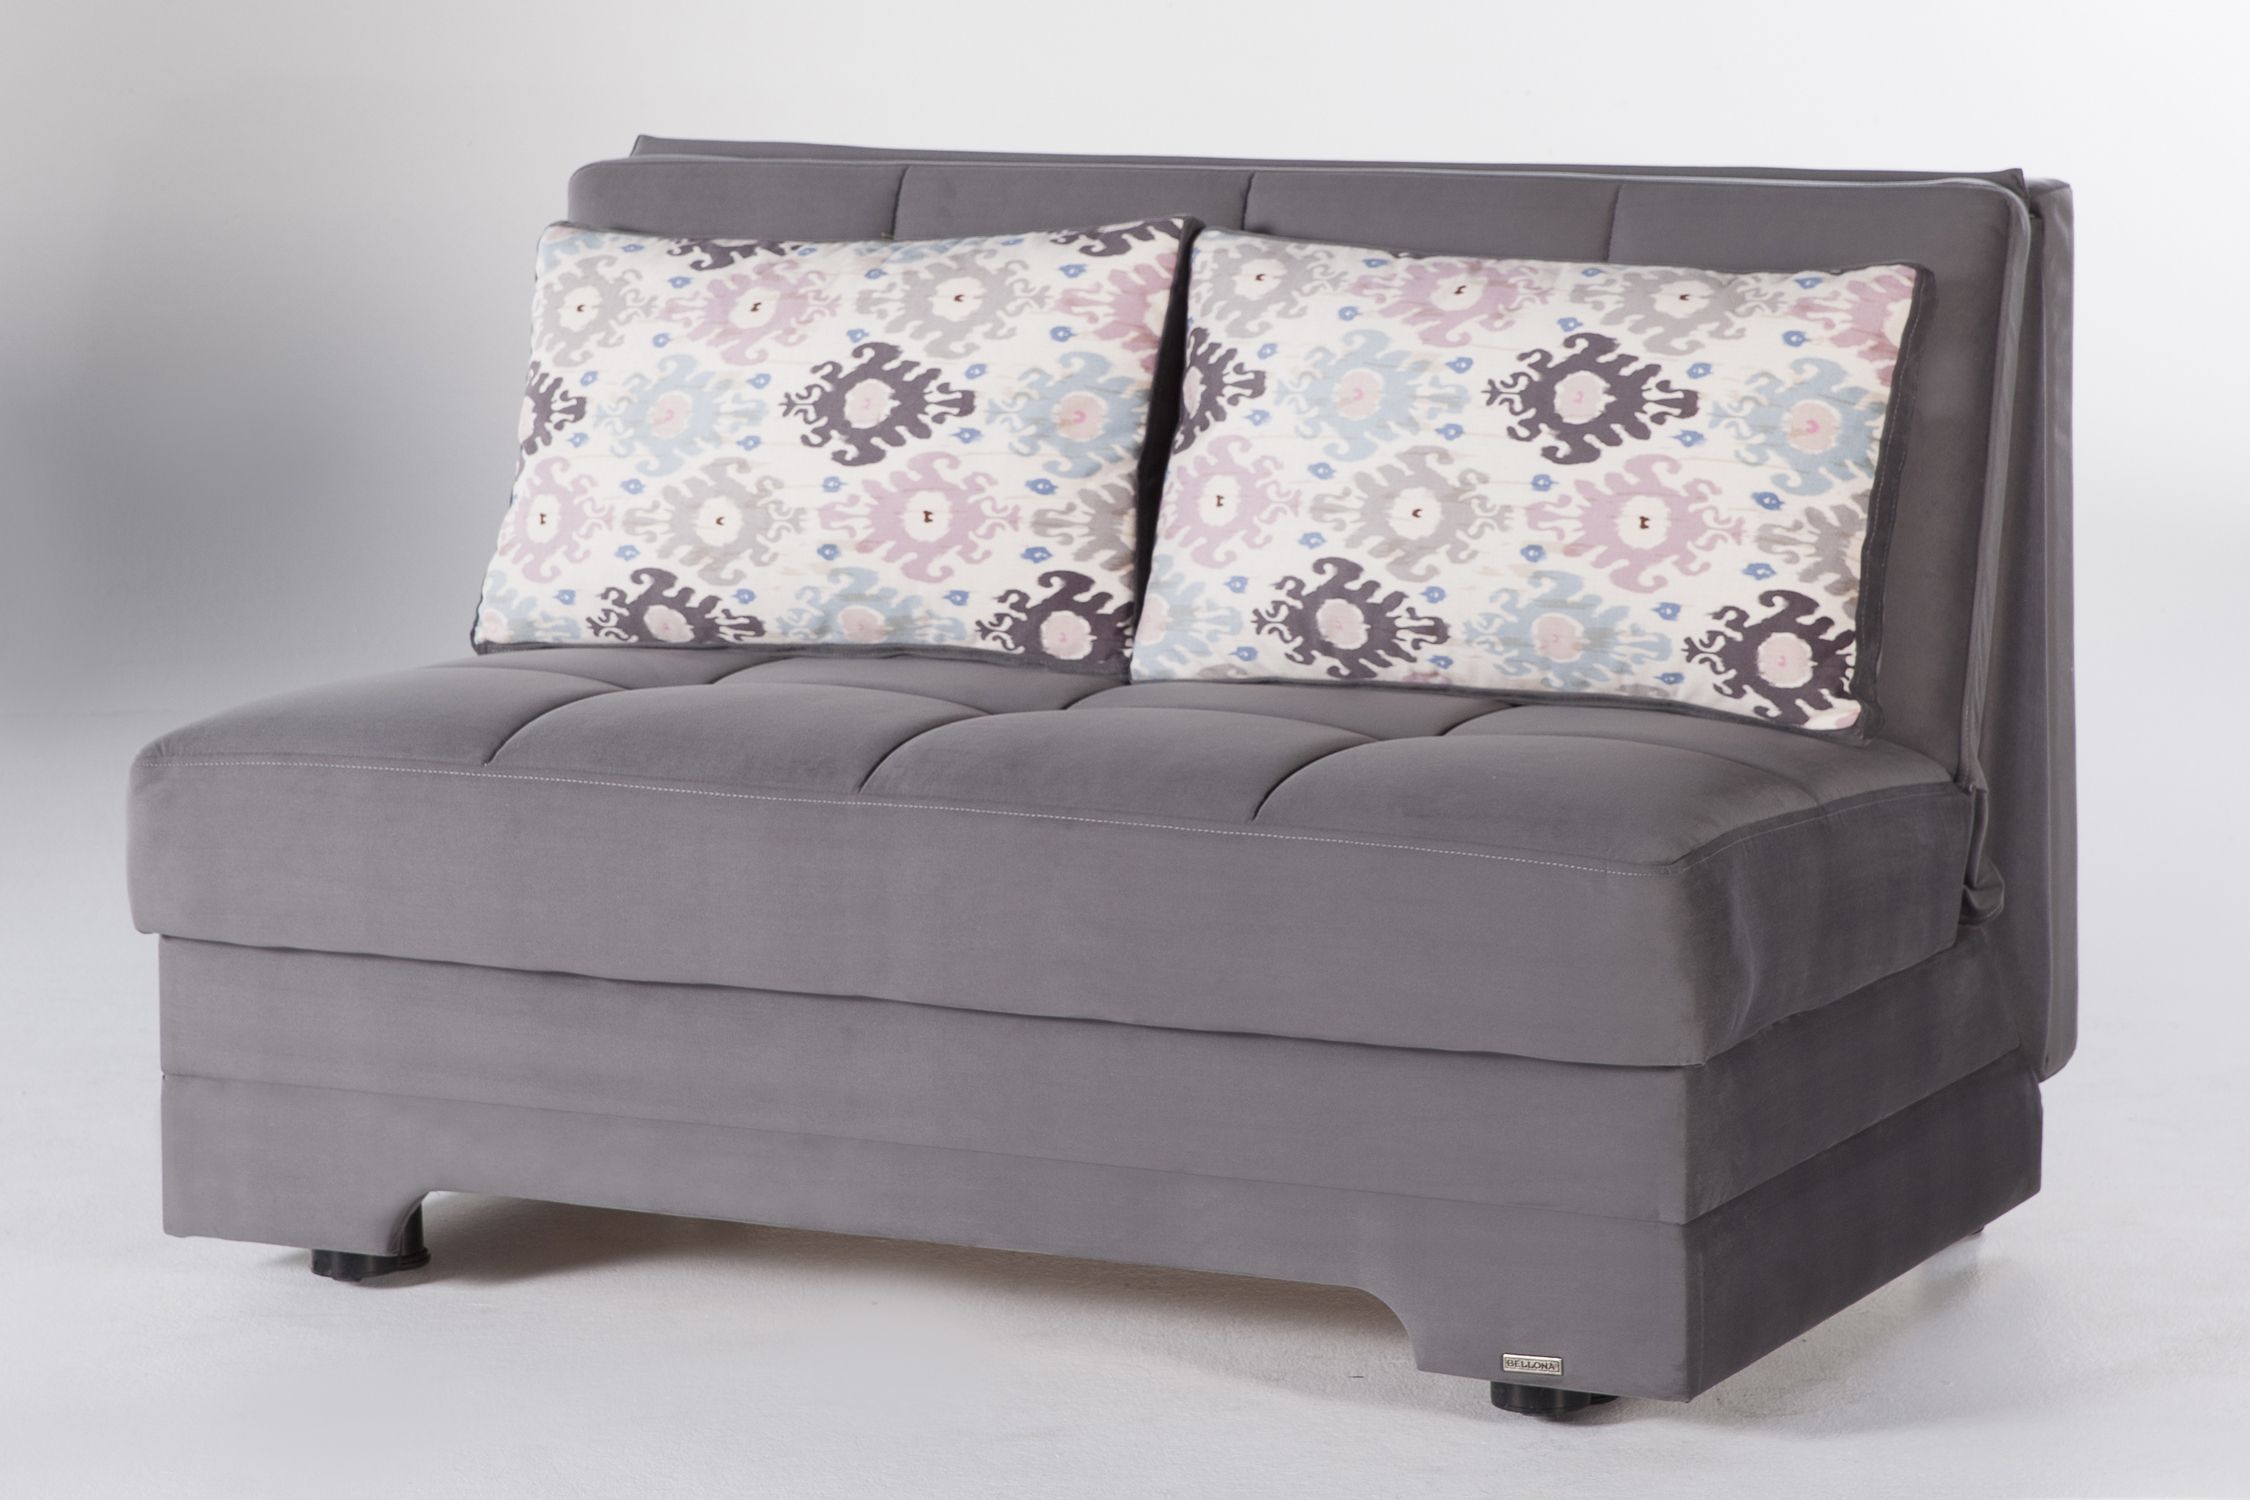 Twist Love Seat Sofa Sleeper In Pure Gray – Sleepworks Regarding Convertible Gray Loveseat Sleepers (View 12 of 20)